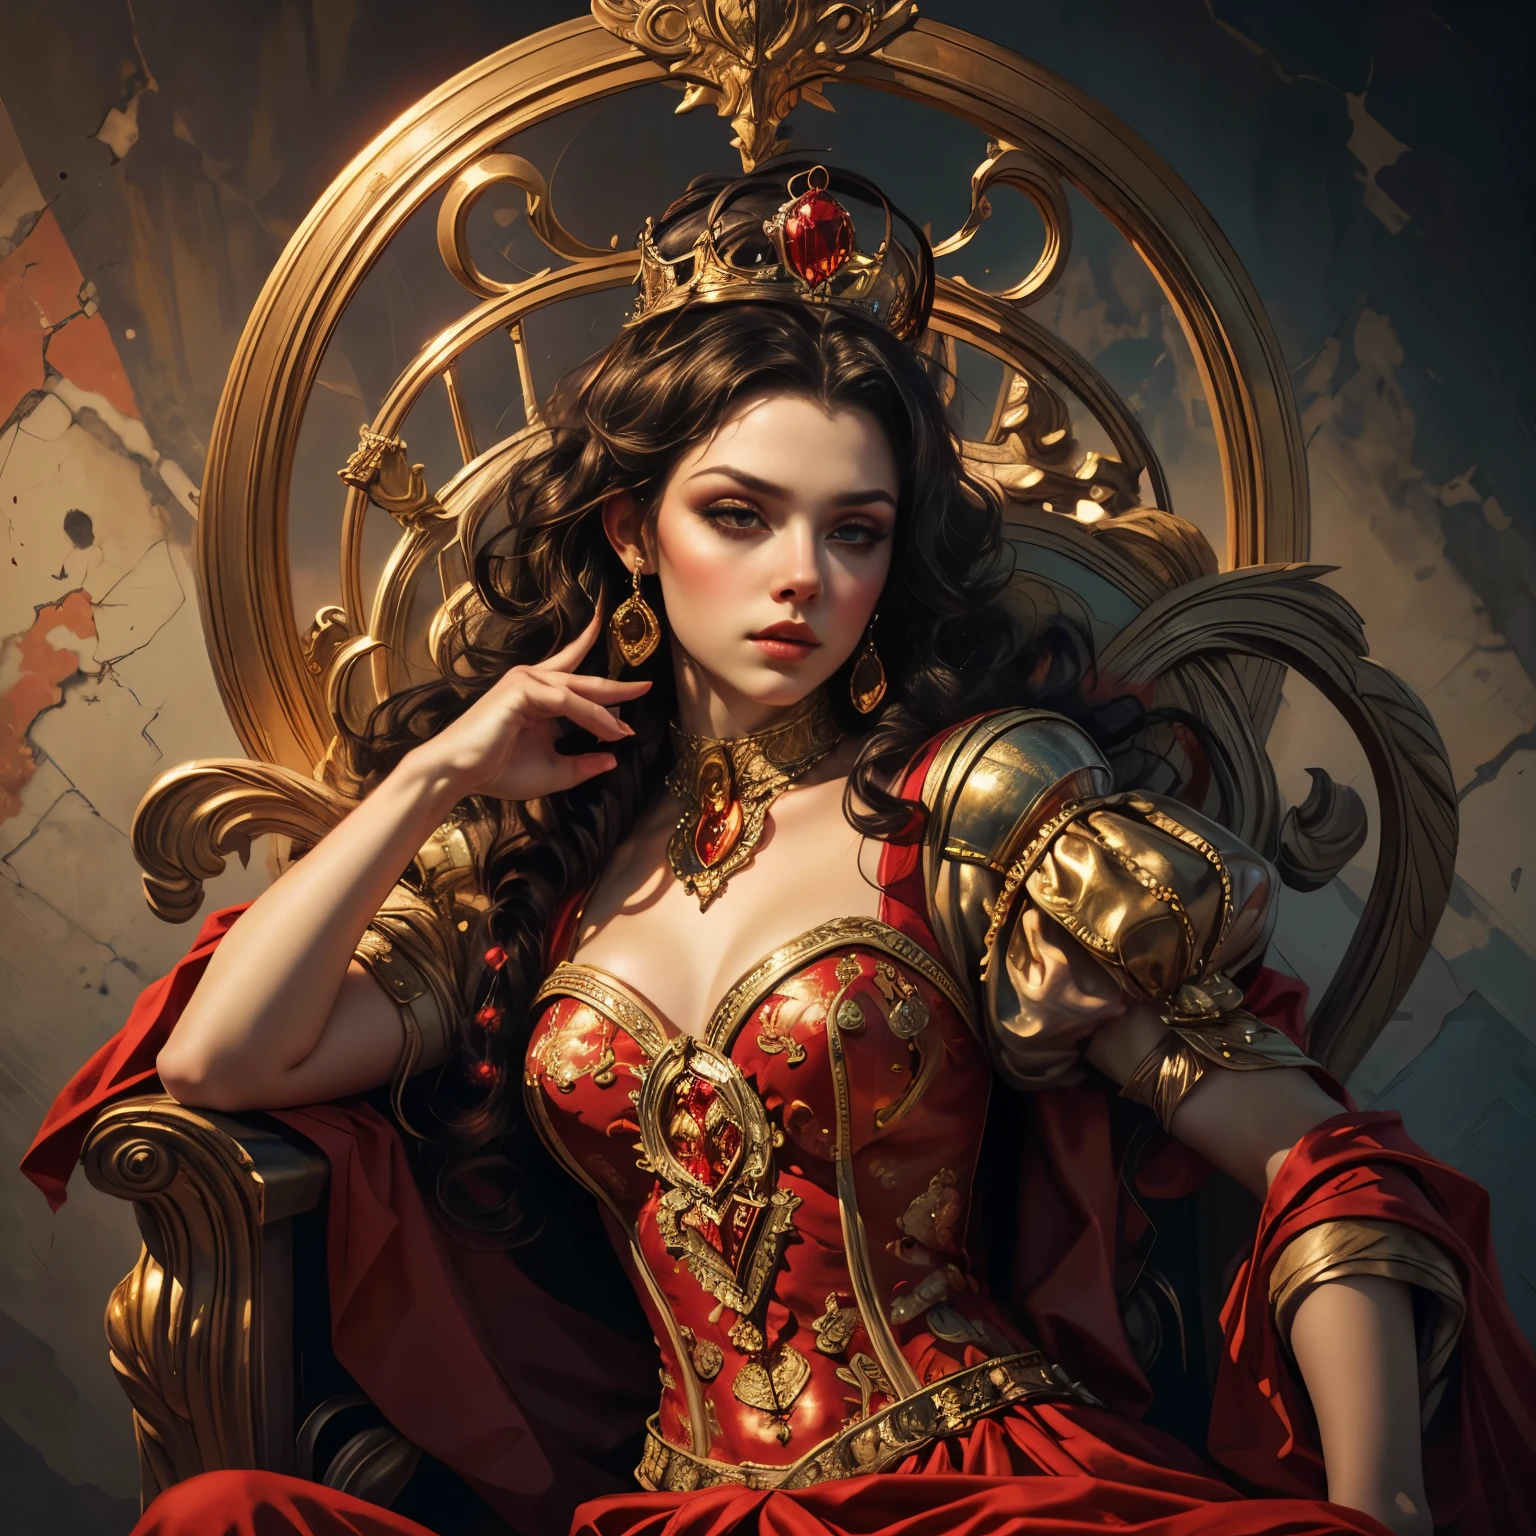 (全身ポートレート:1.1), 美しいハートの女王, エレガントな赤いロングドレス, 流れる赤い岬, 金の王冠, 印象的な赤いメイク, 鋭い視線, 王者の姿勢, 華やかな王座, ピンクと赤のバラでいっぱいの背景:1.1, ドラマチックな照明, (最高品質,4k,8K,高解像度,傑作:1.2),非常に詳細な,(現実的,photo現実的,photo-現実的:1.37),複雑な詳細,映画の構成,鮮やかな色彩,明暗法照明,劇的な影,ファンタジー,デジタルアート